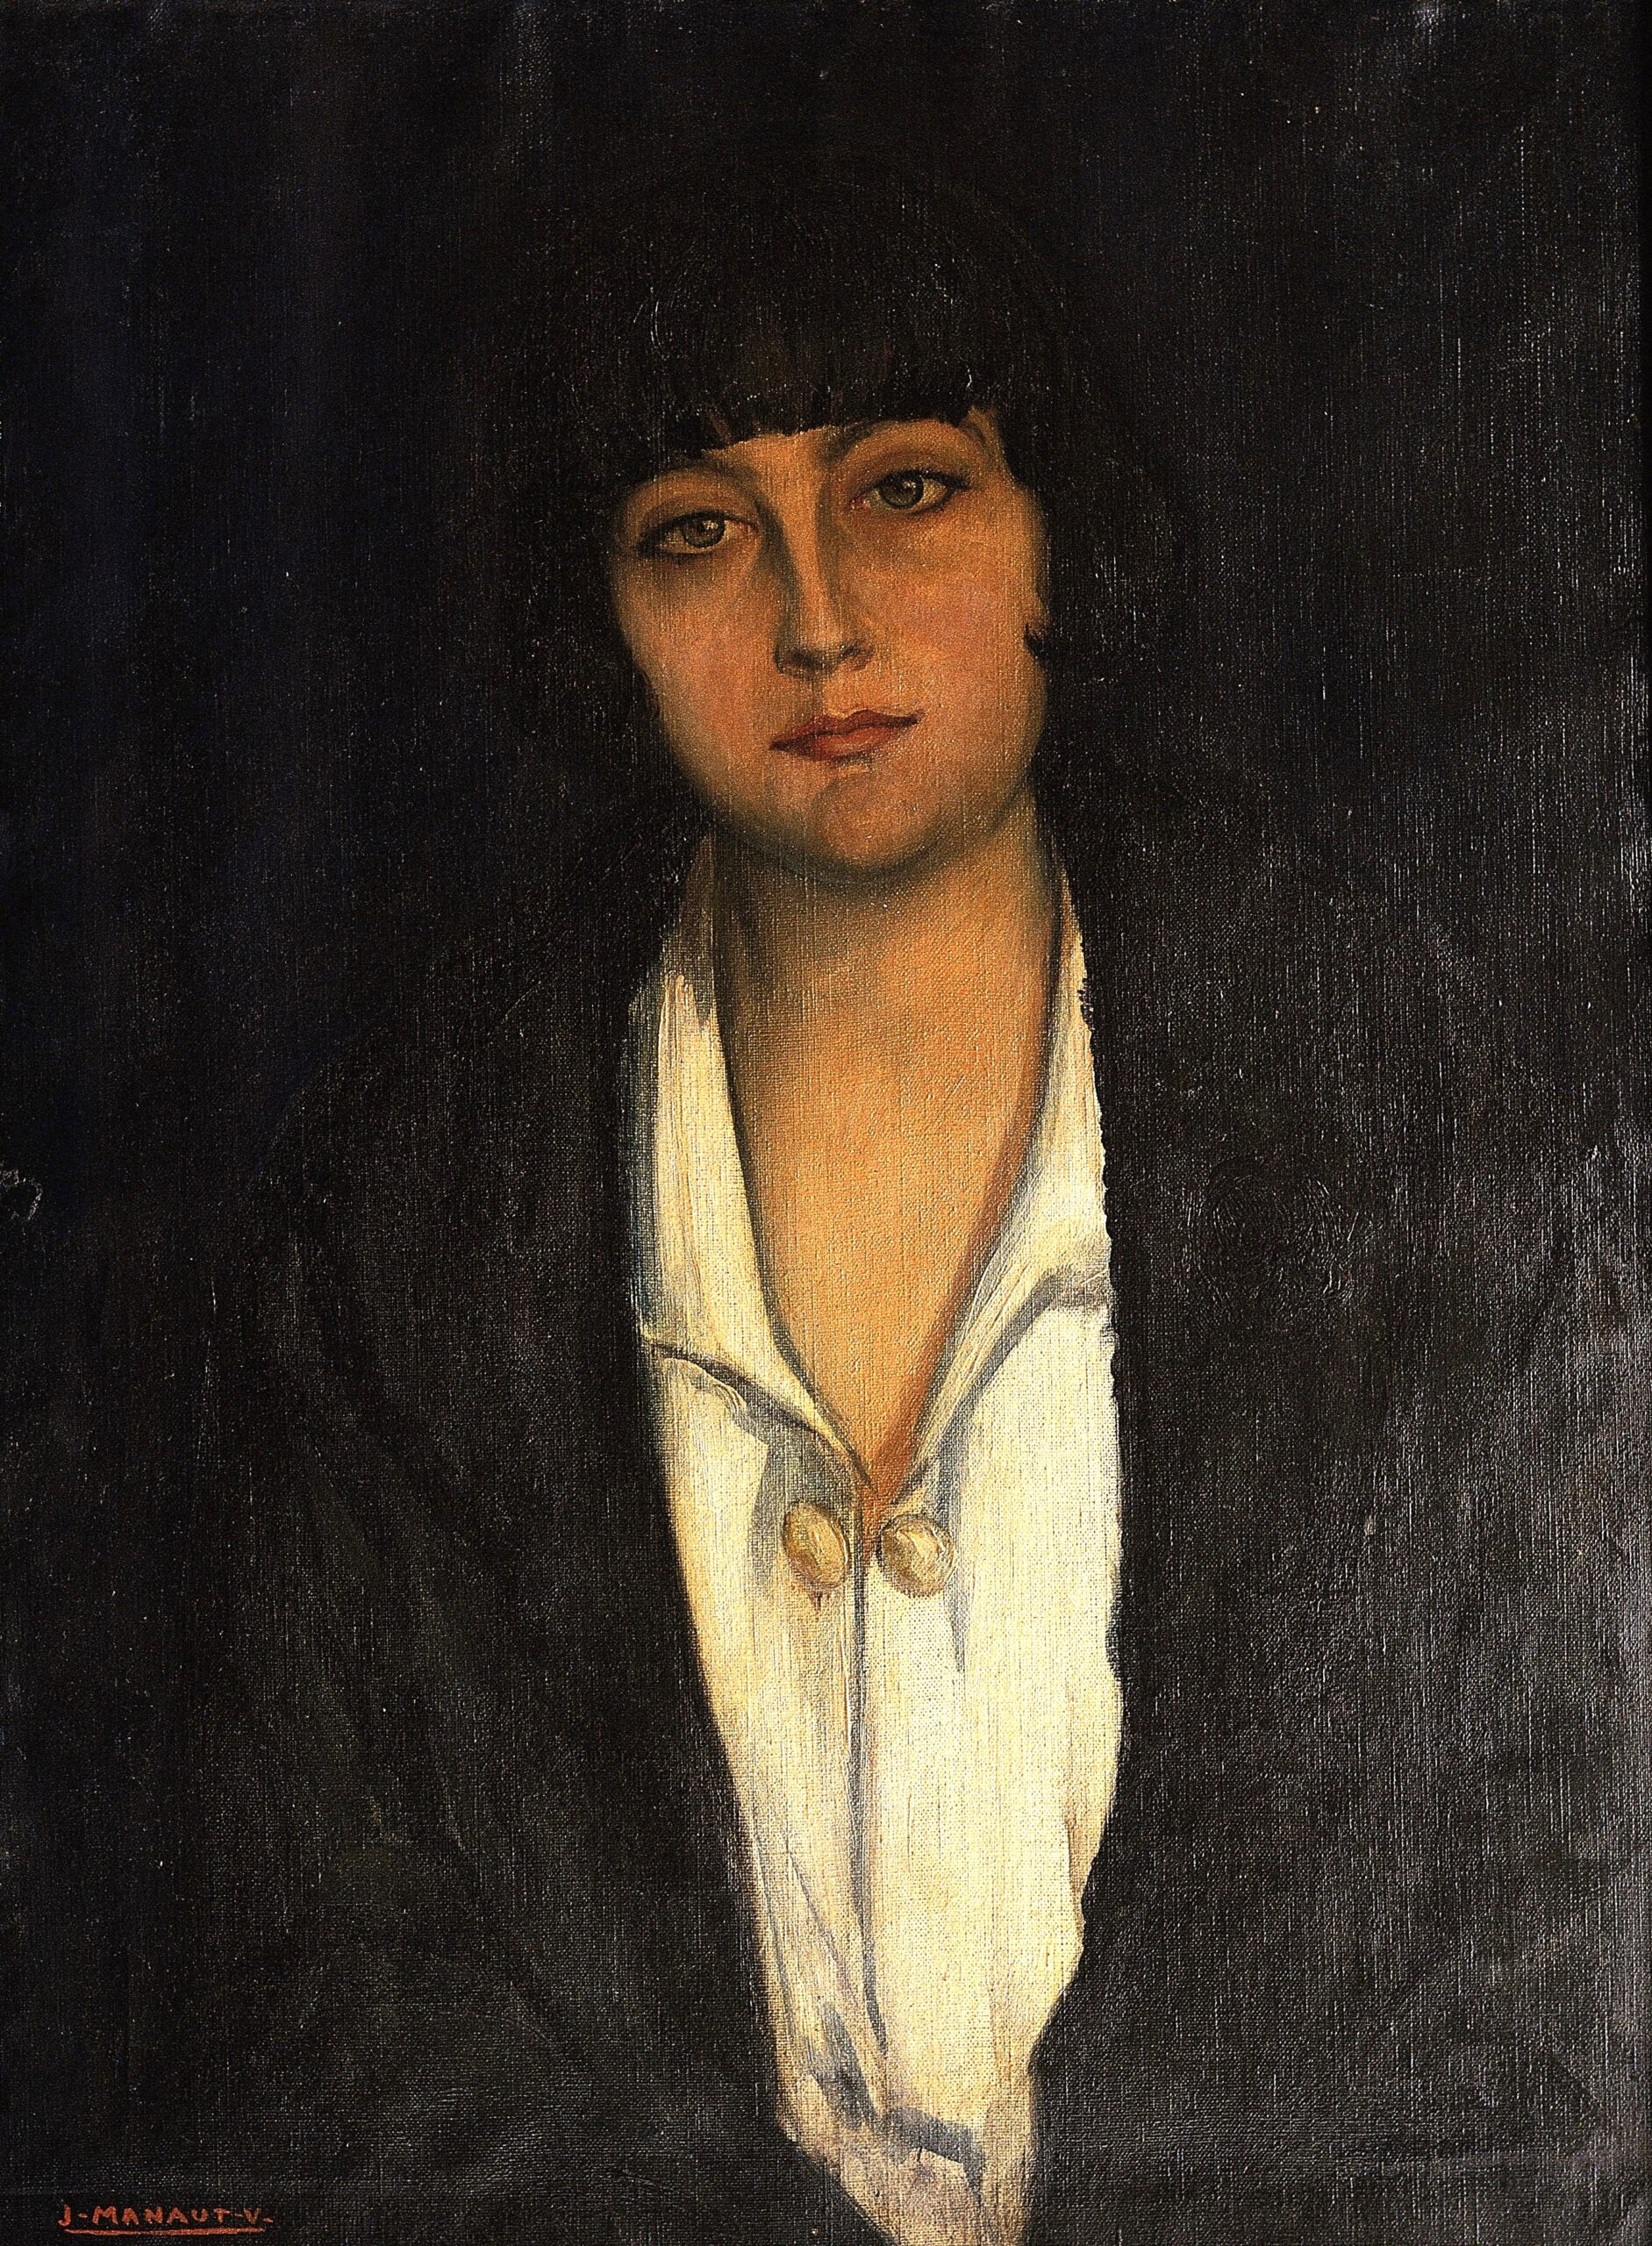 Pintura de José Manaut titulada Retrato de Ángeles Roca, 1925-26. Óleo sobre lienzo.